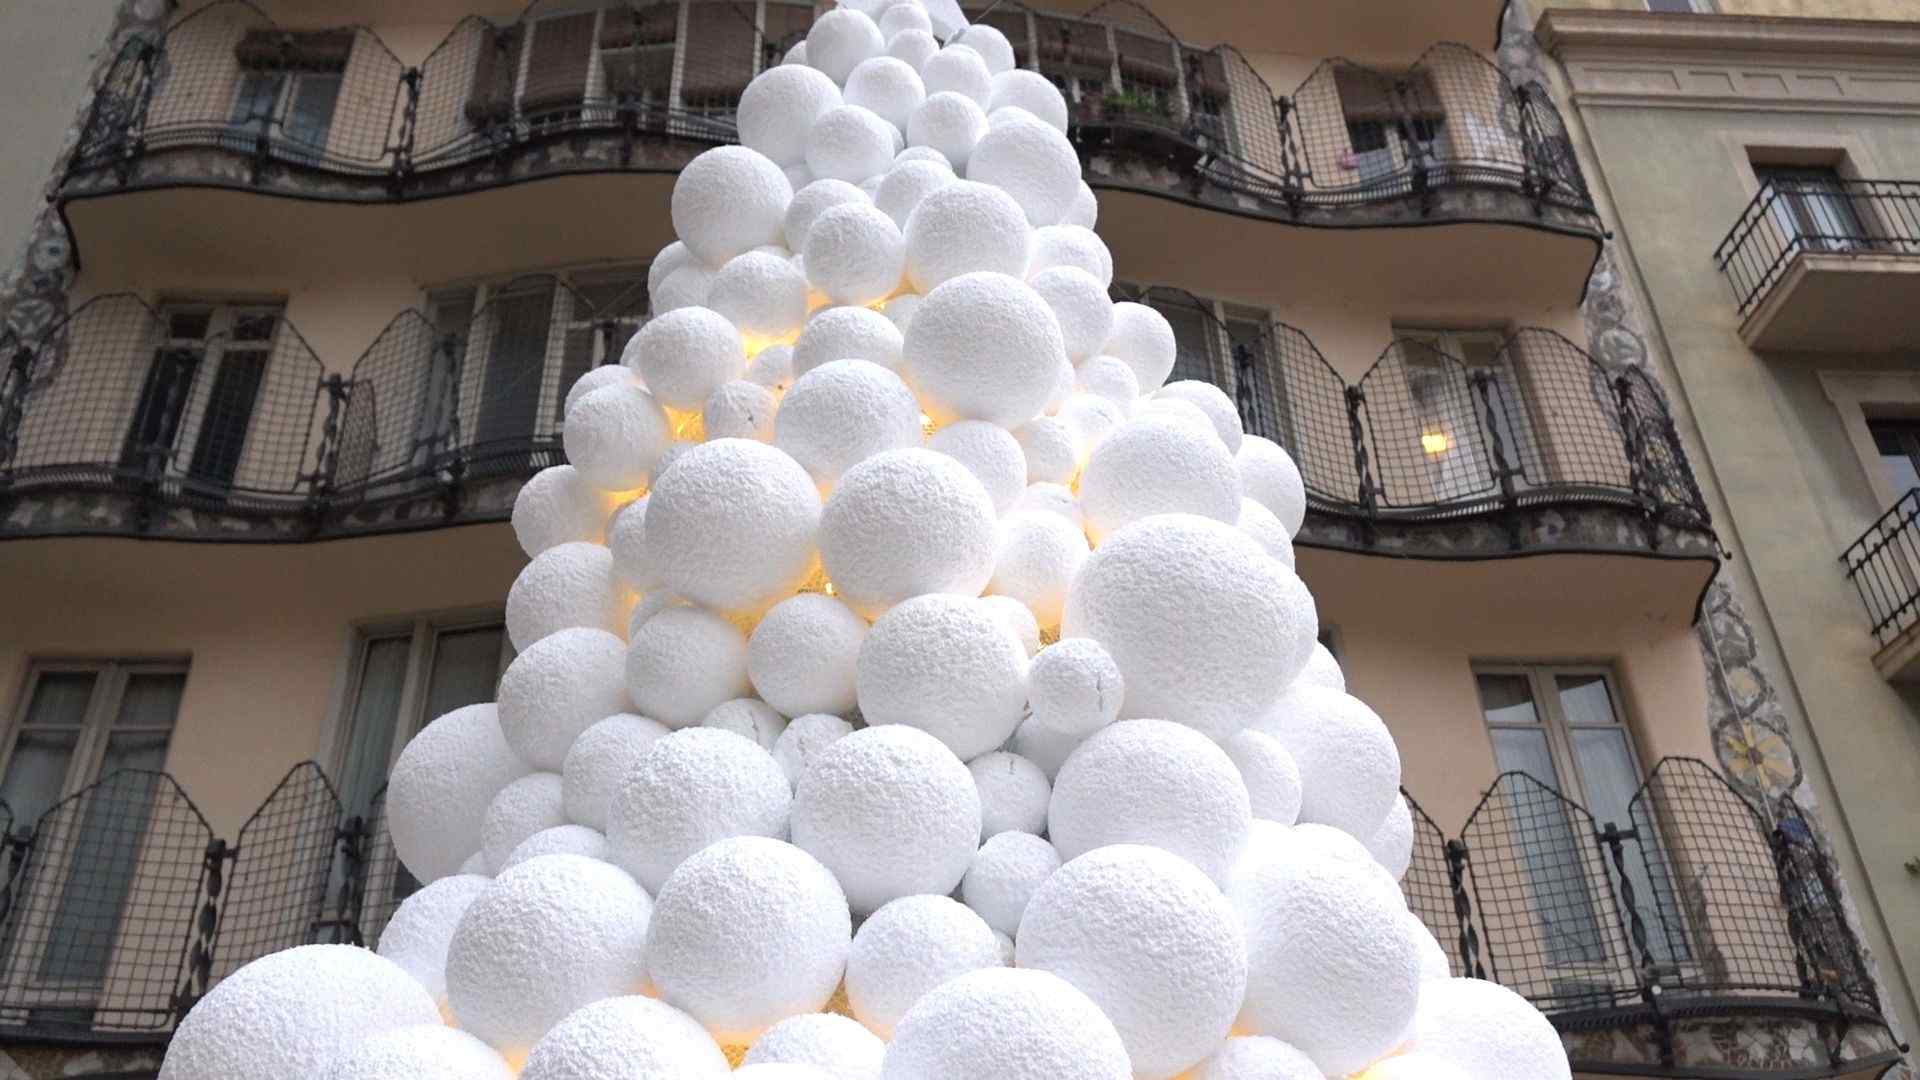 VÍDEO: Nieva en la Casa Batlló